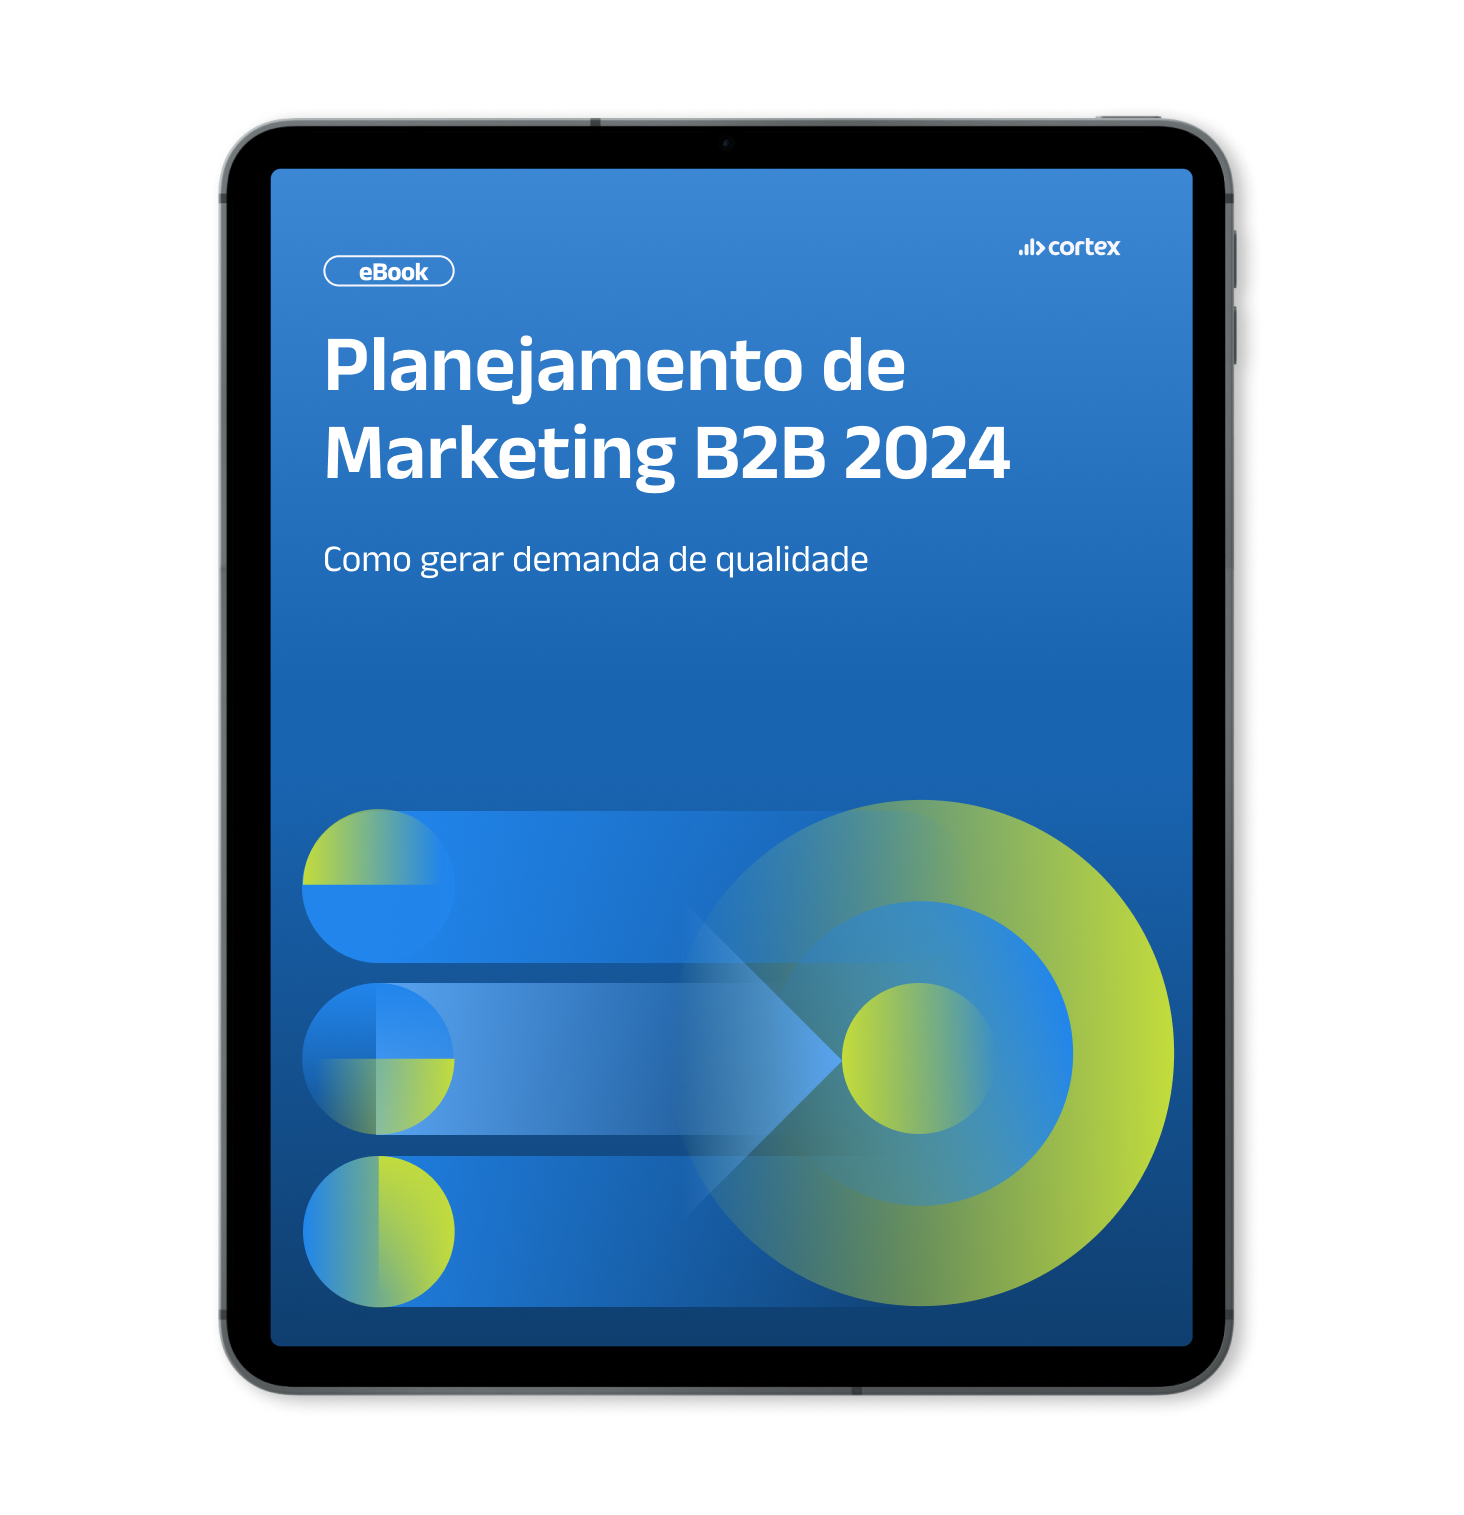 Mockup de Tablet com capa do Ebook - Planejamento de Marketing B2B 2024_ como gerar demanda de qualidade